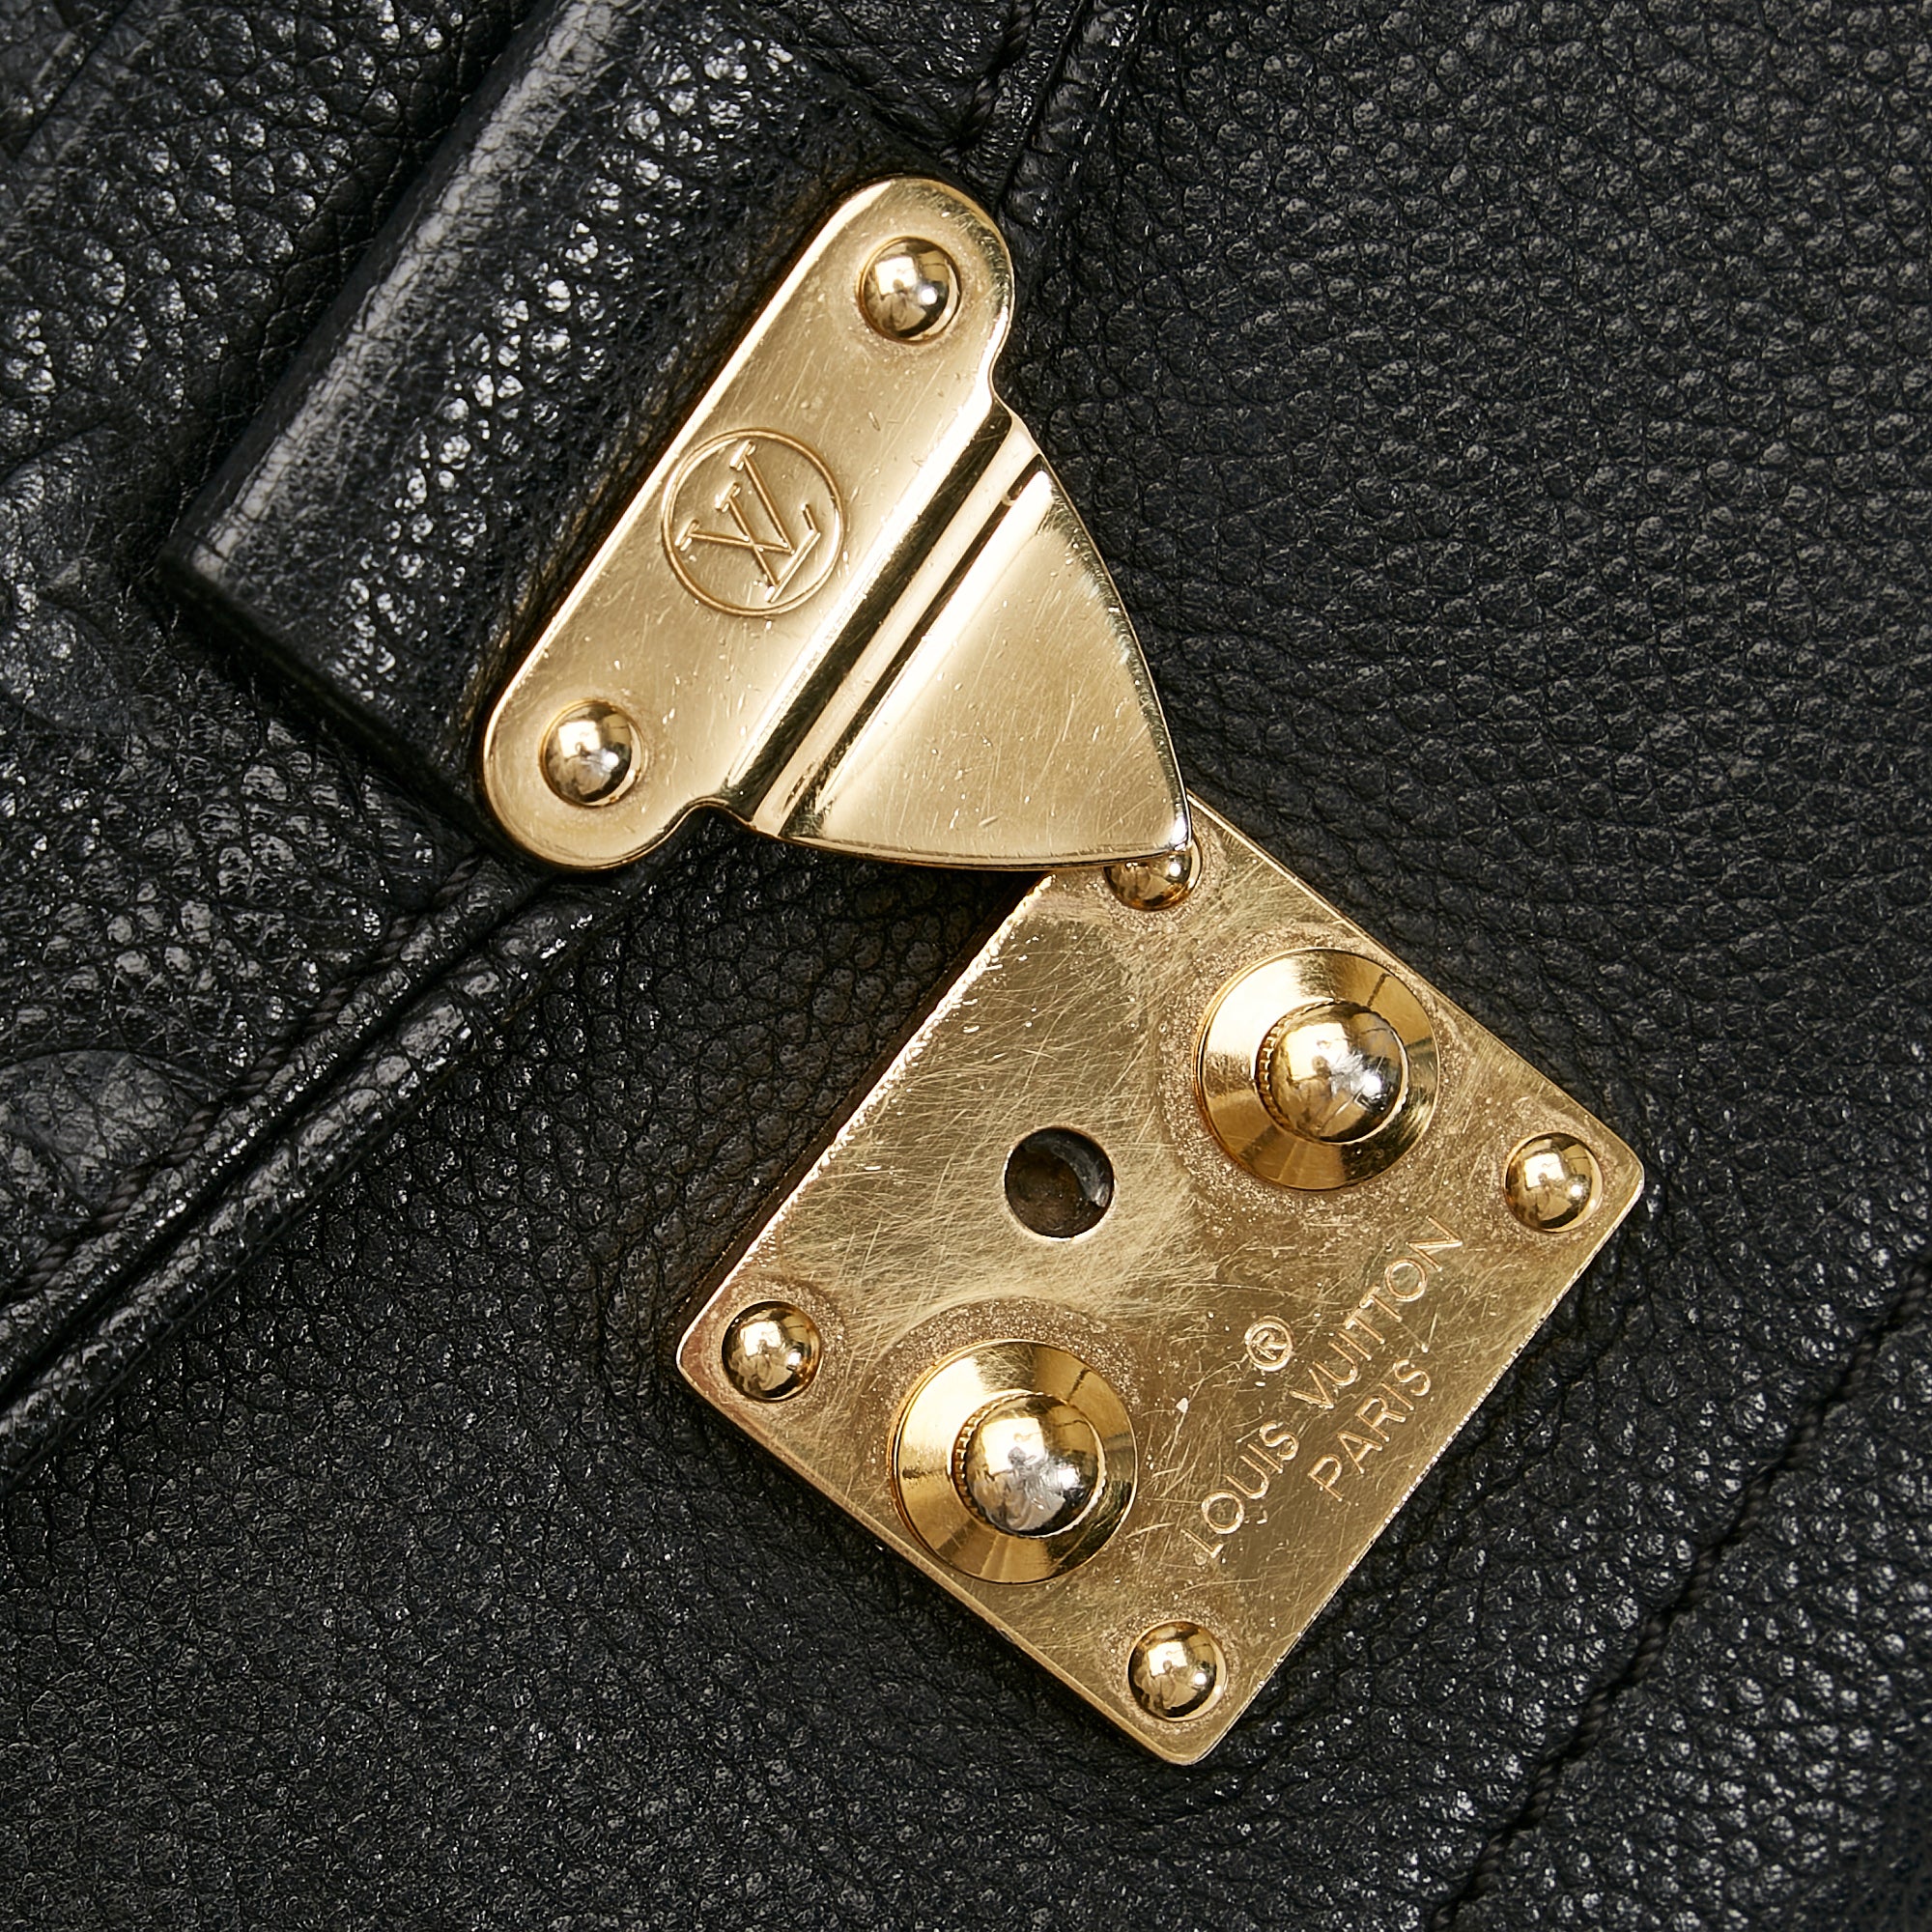 St Germain GM Vintage Monogram – Keeks Designer Handbags